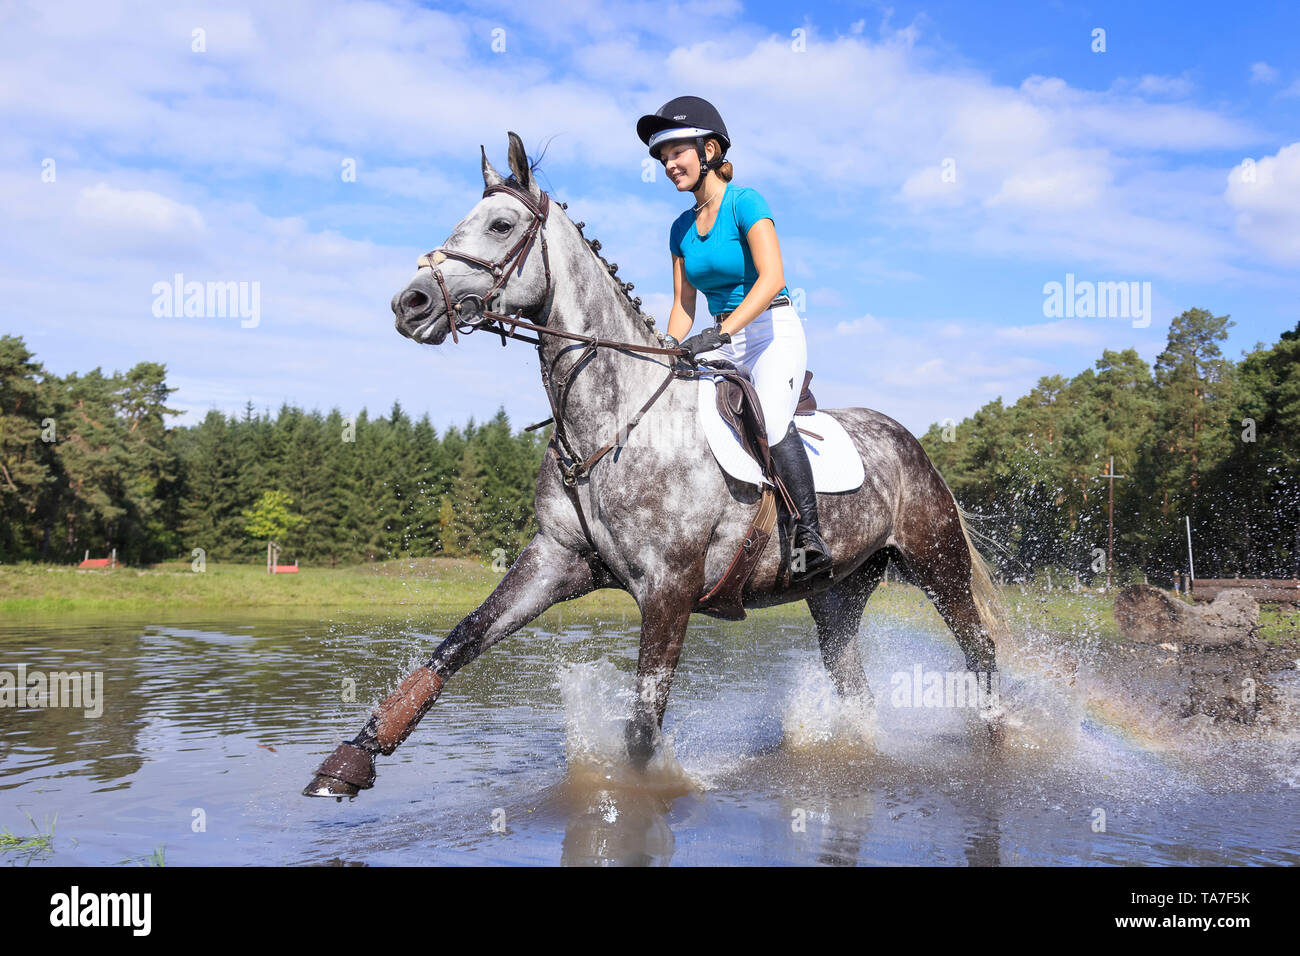 Trakehner. Reiter auf juvenile graues Pferd während einer Cross-country-reiten, Galopp durch Wasser. Deutschland Stockfoto